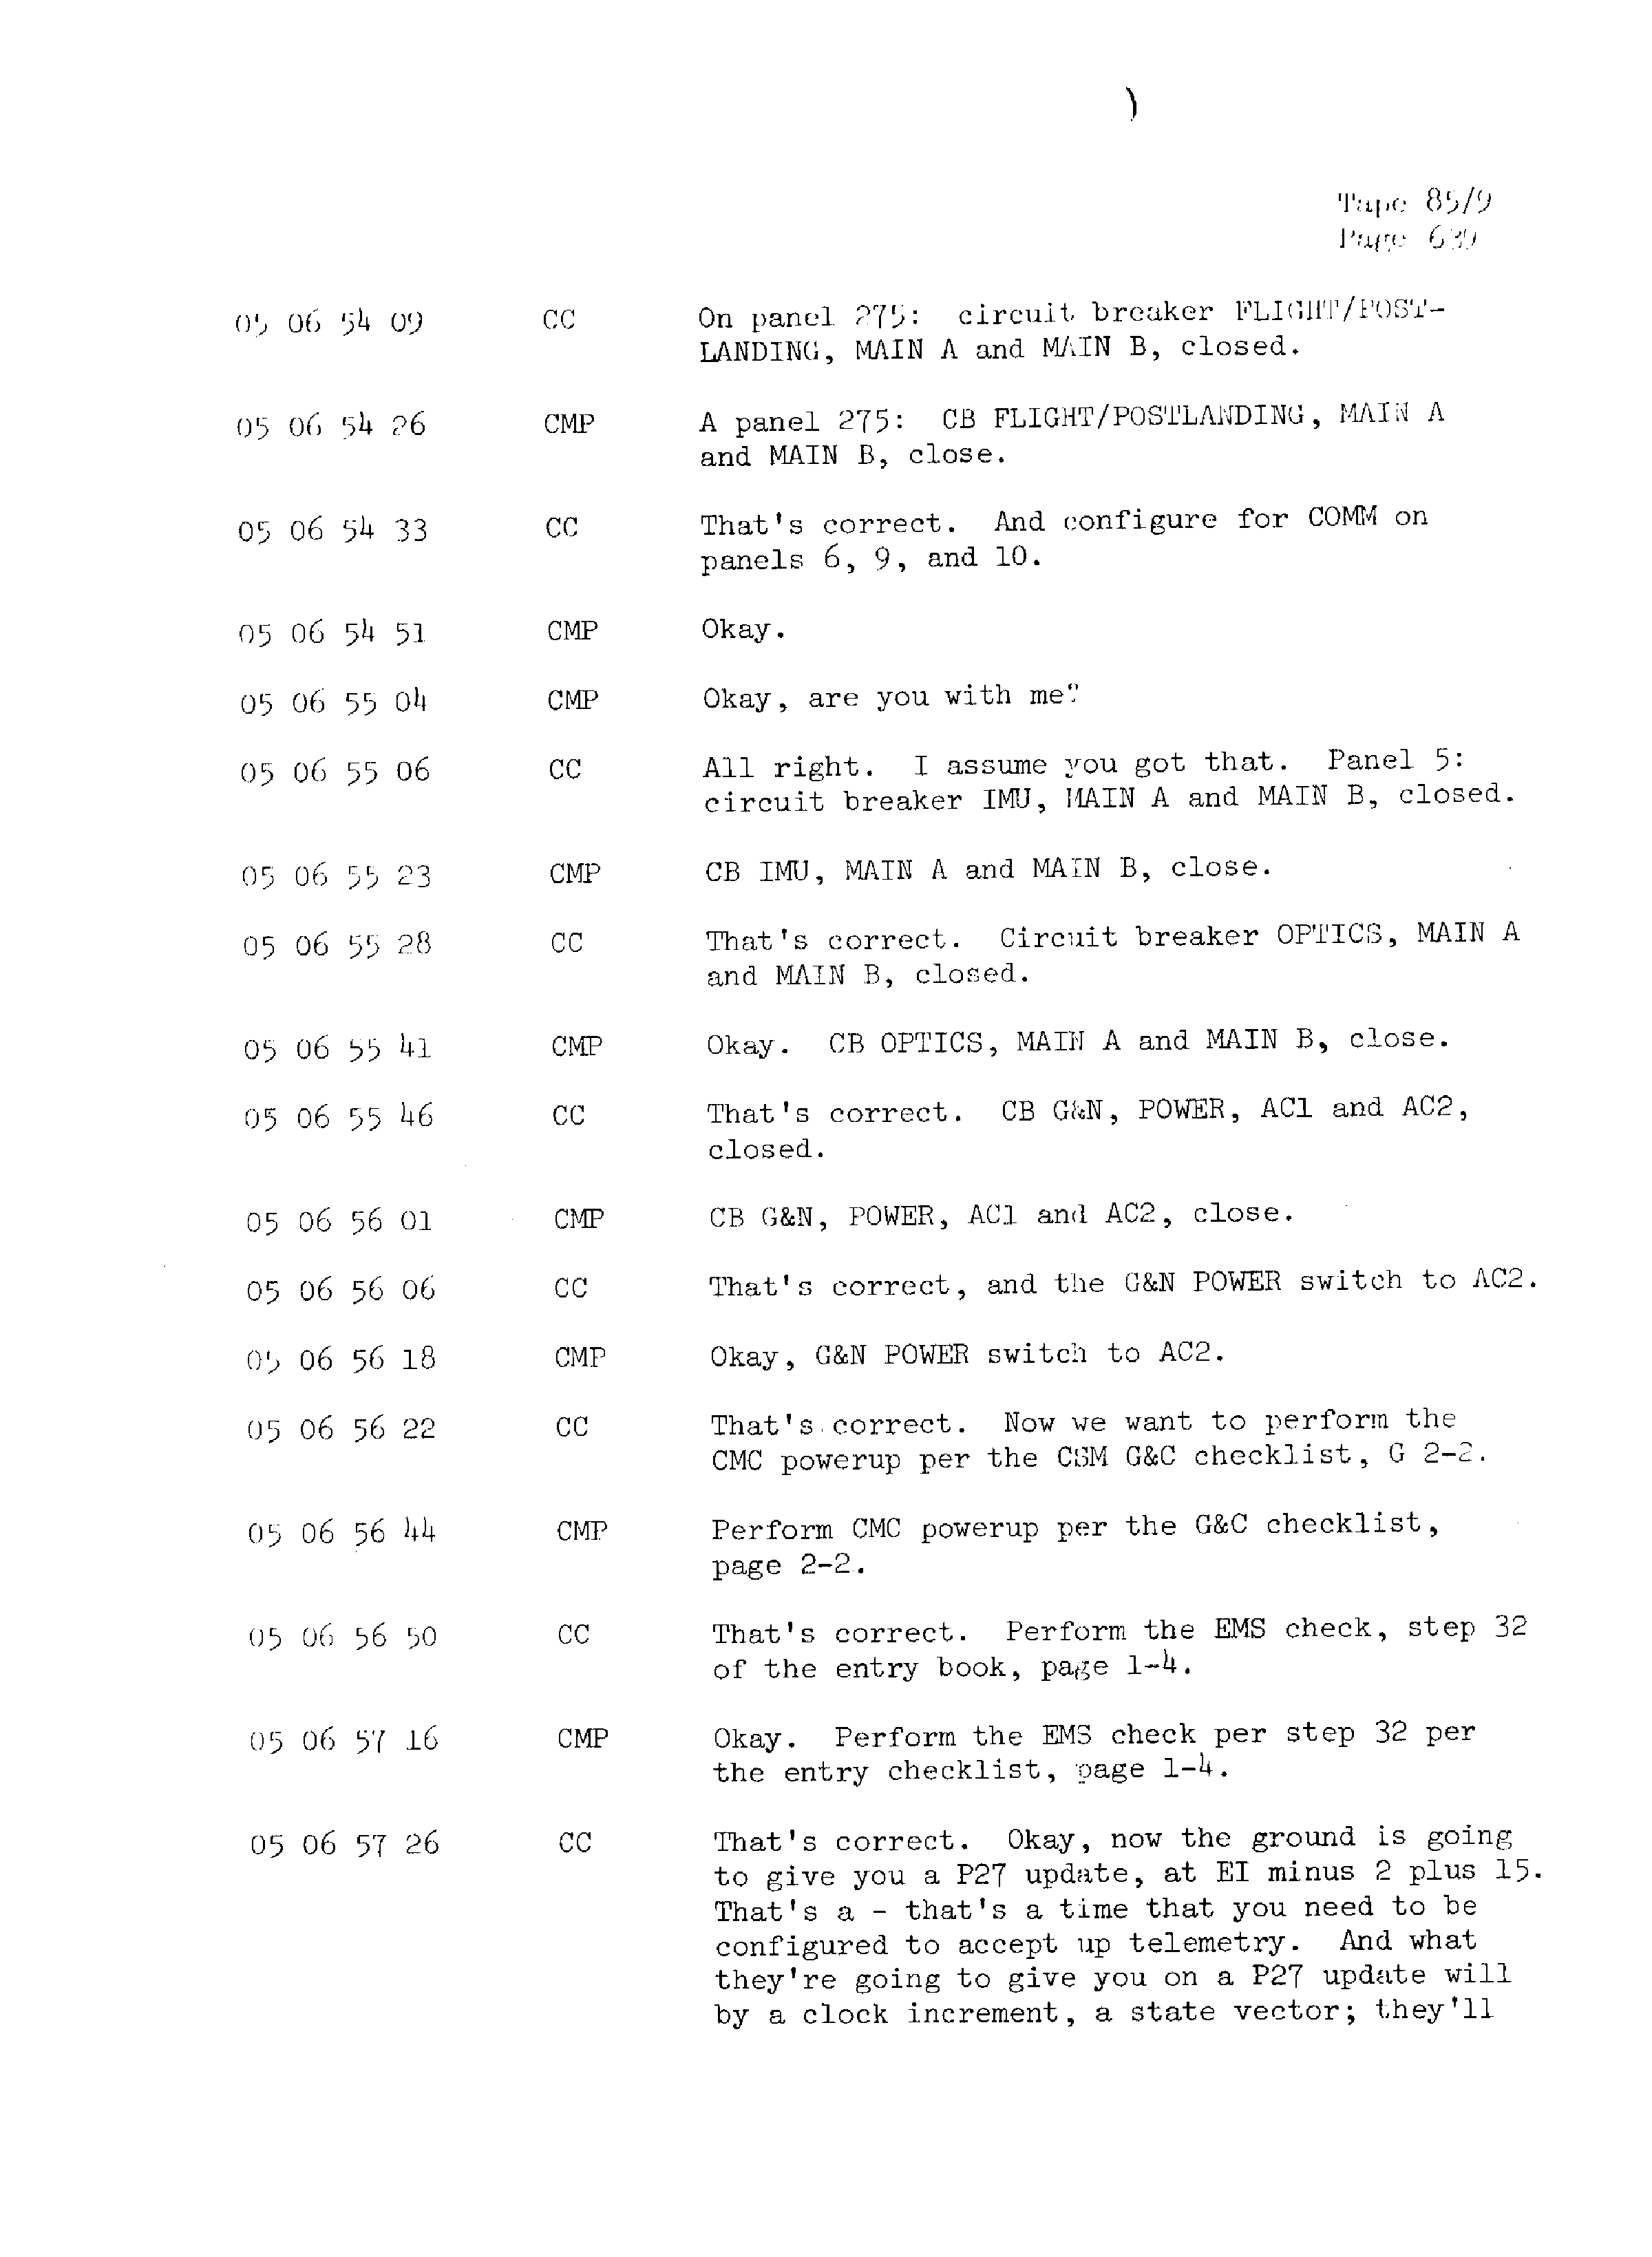 Page 646 of Apollo 13’s original transcript